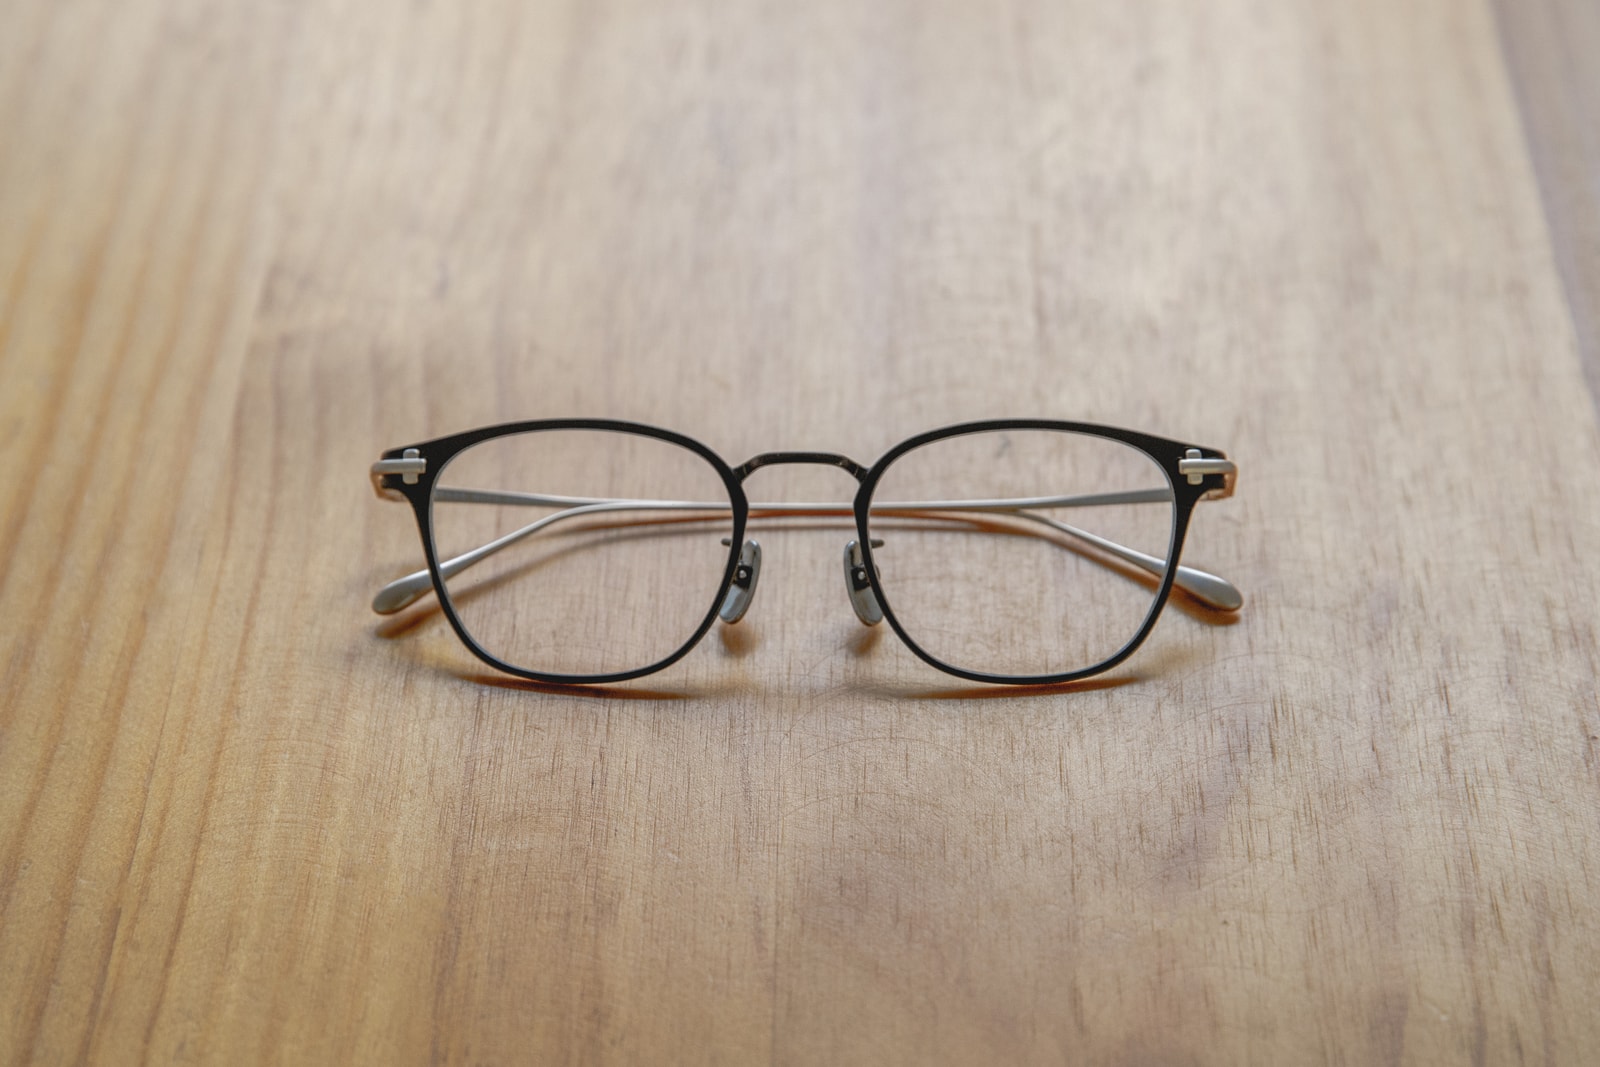 隨年變色 - 日本眼鏡品牌 TAYLOR WITH RESPECT 舊化感新作